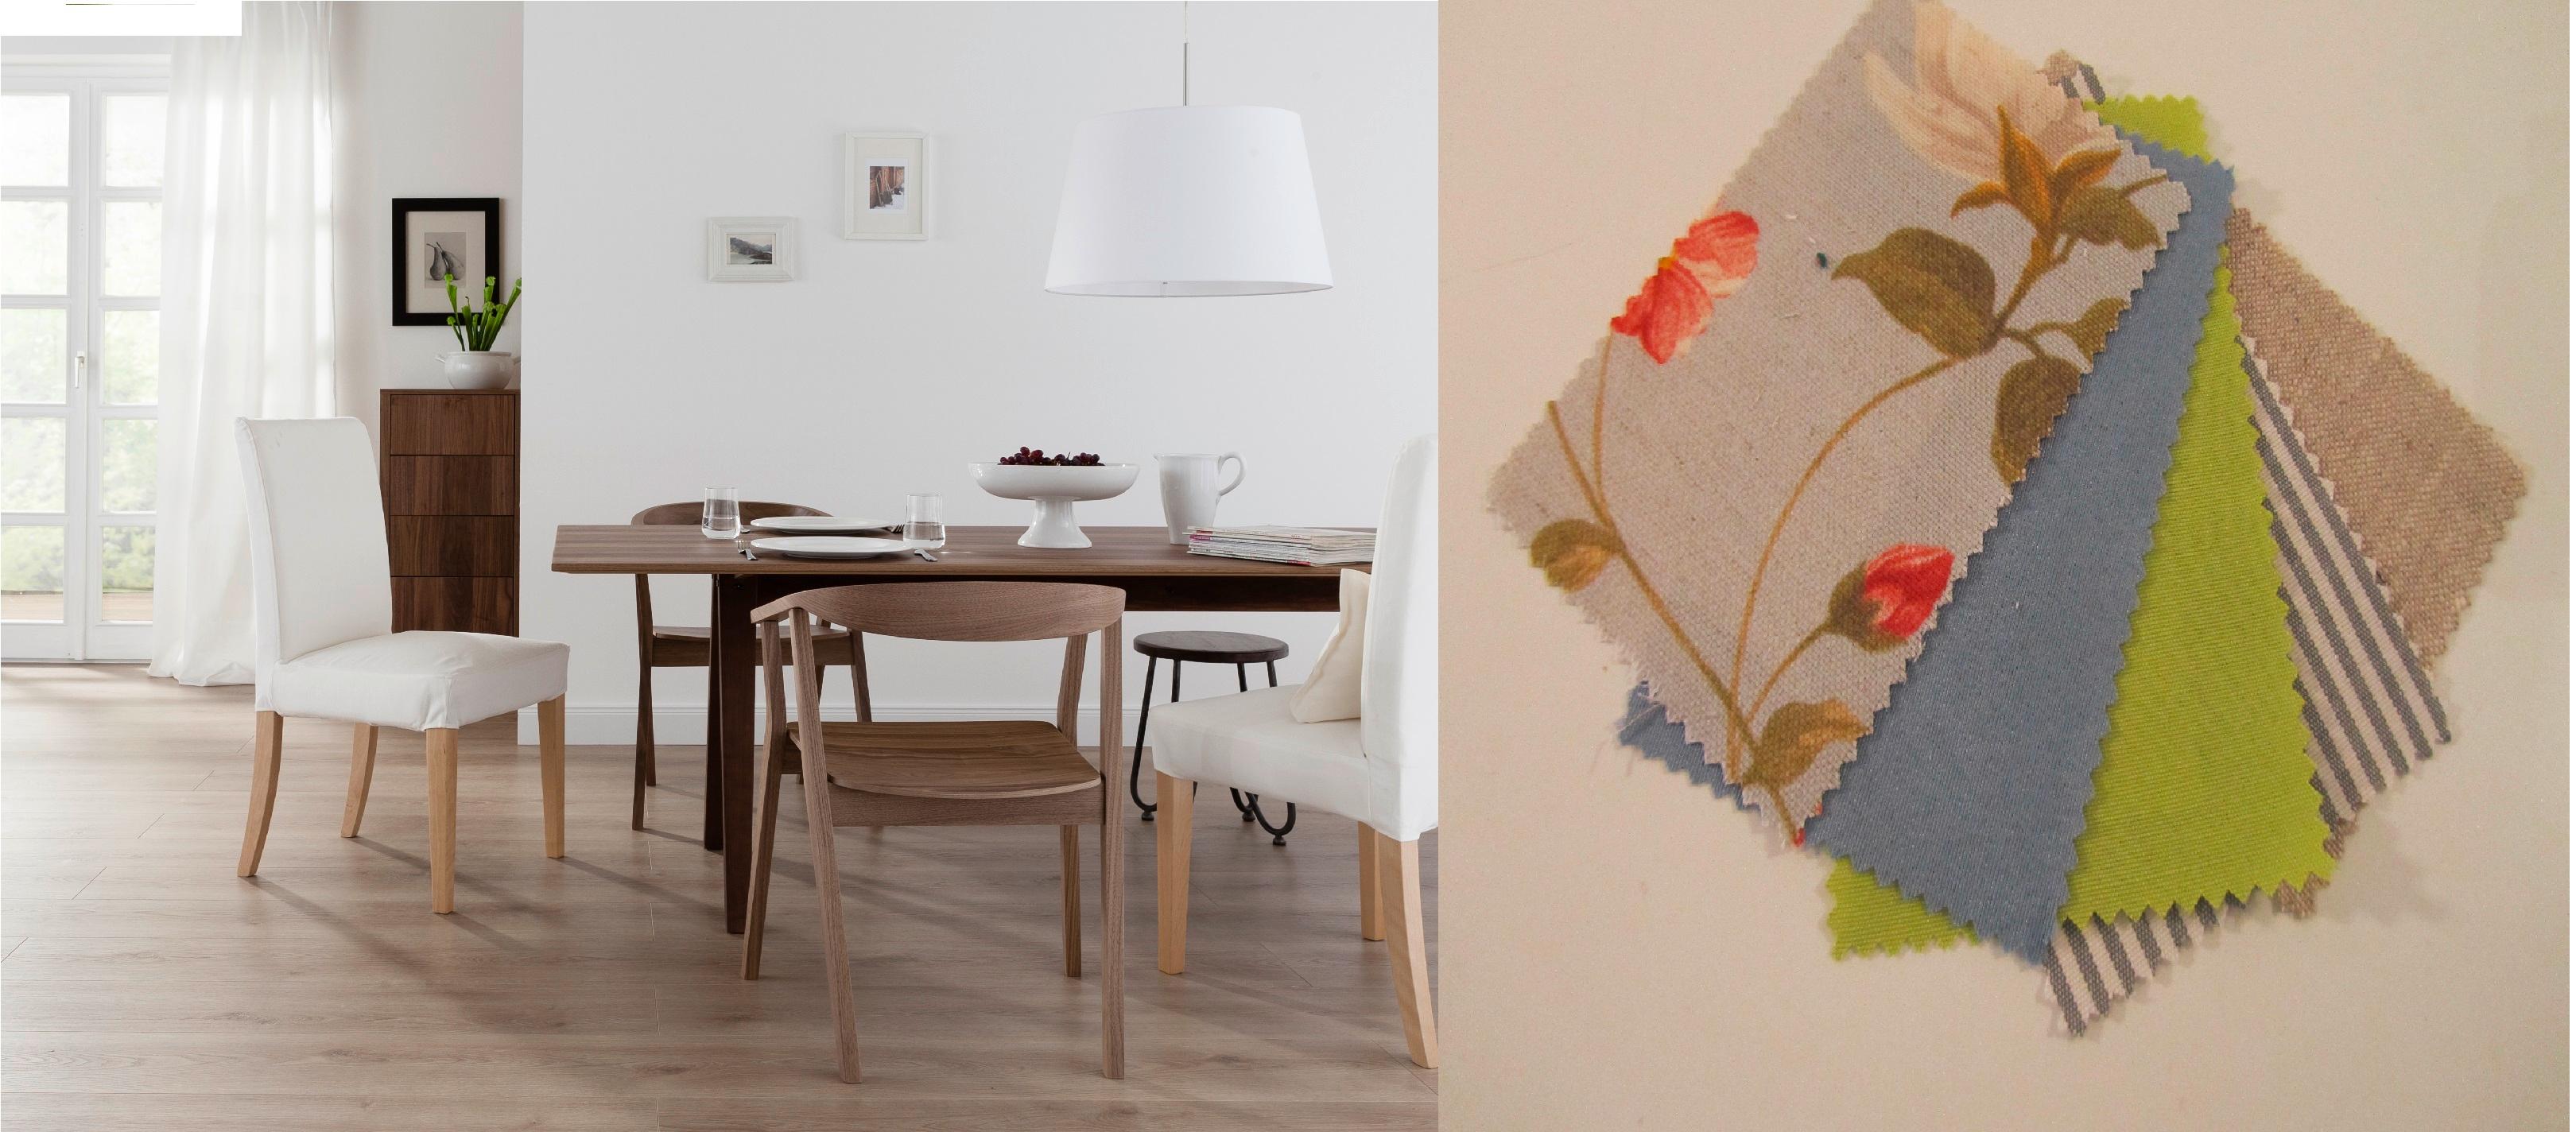 Das Zimmer färben #stuhl #sessel #kissen #vorhang #ikea ©Saustark Design GmbH